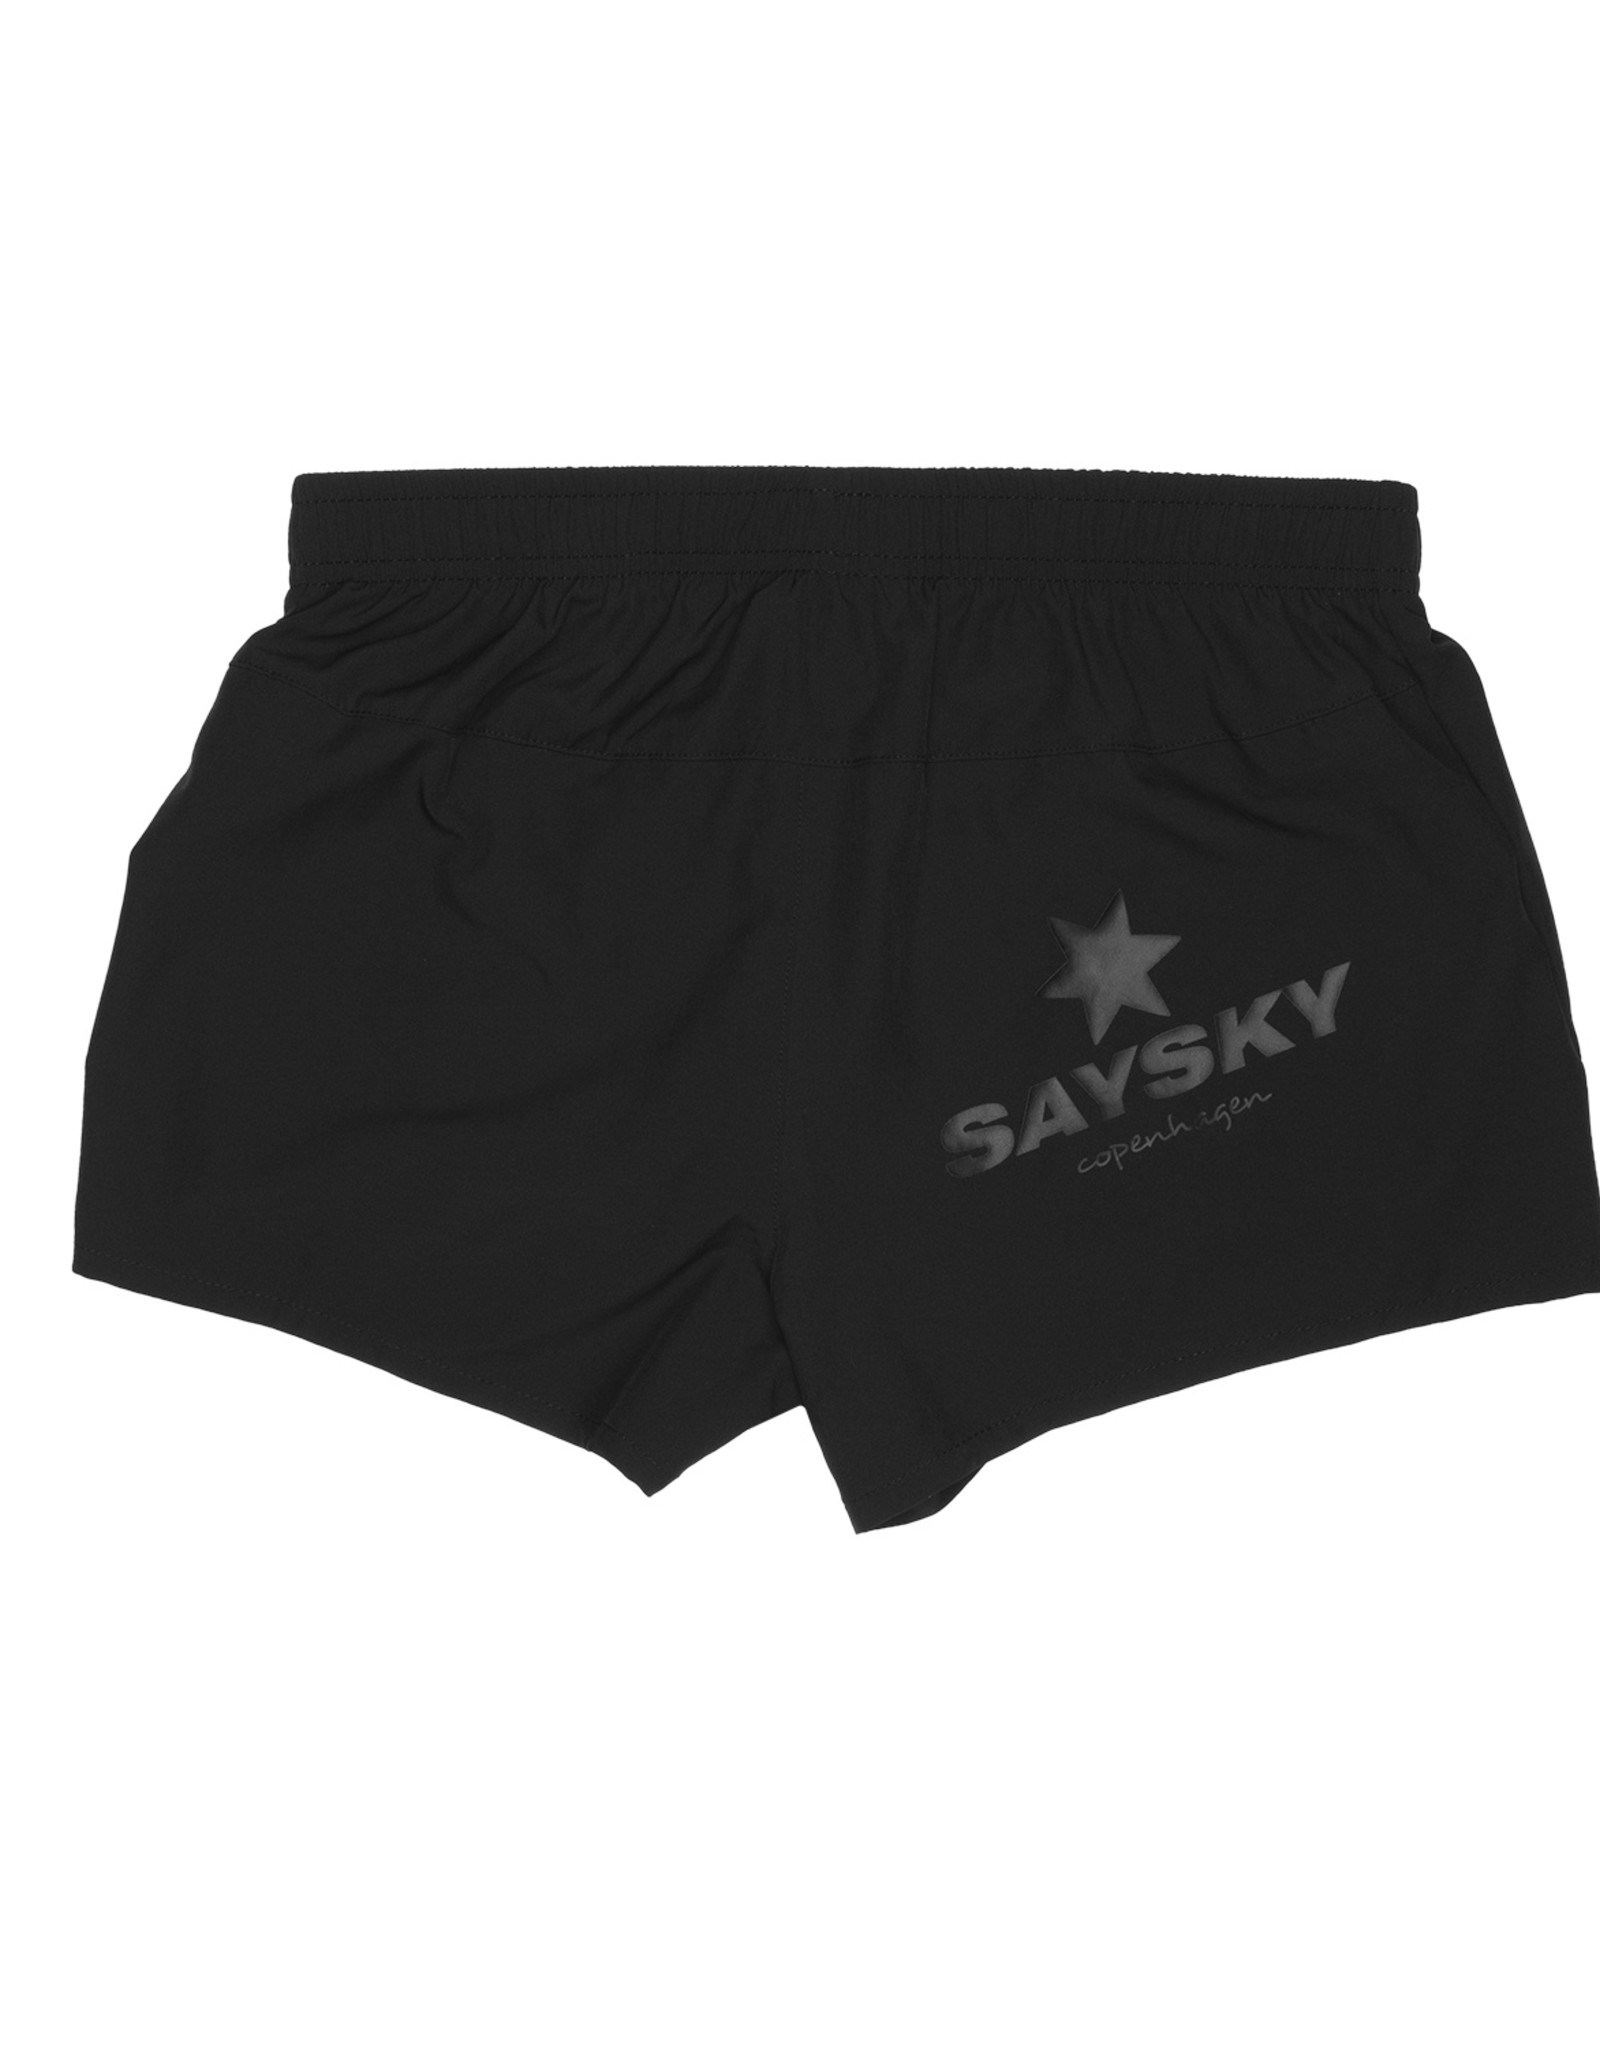 Saysky Pace shorts dames (BGRSH01)